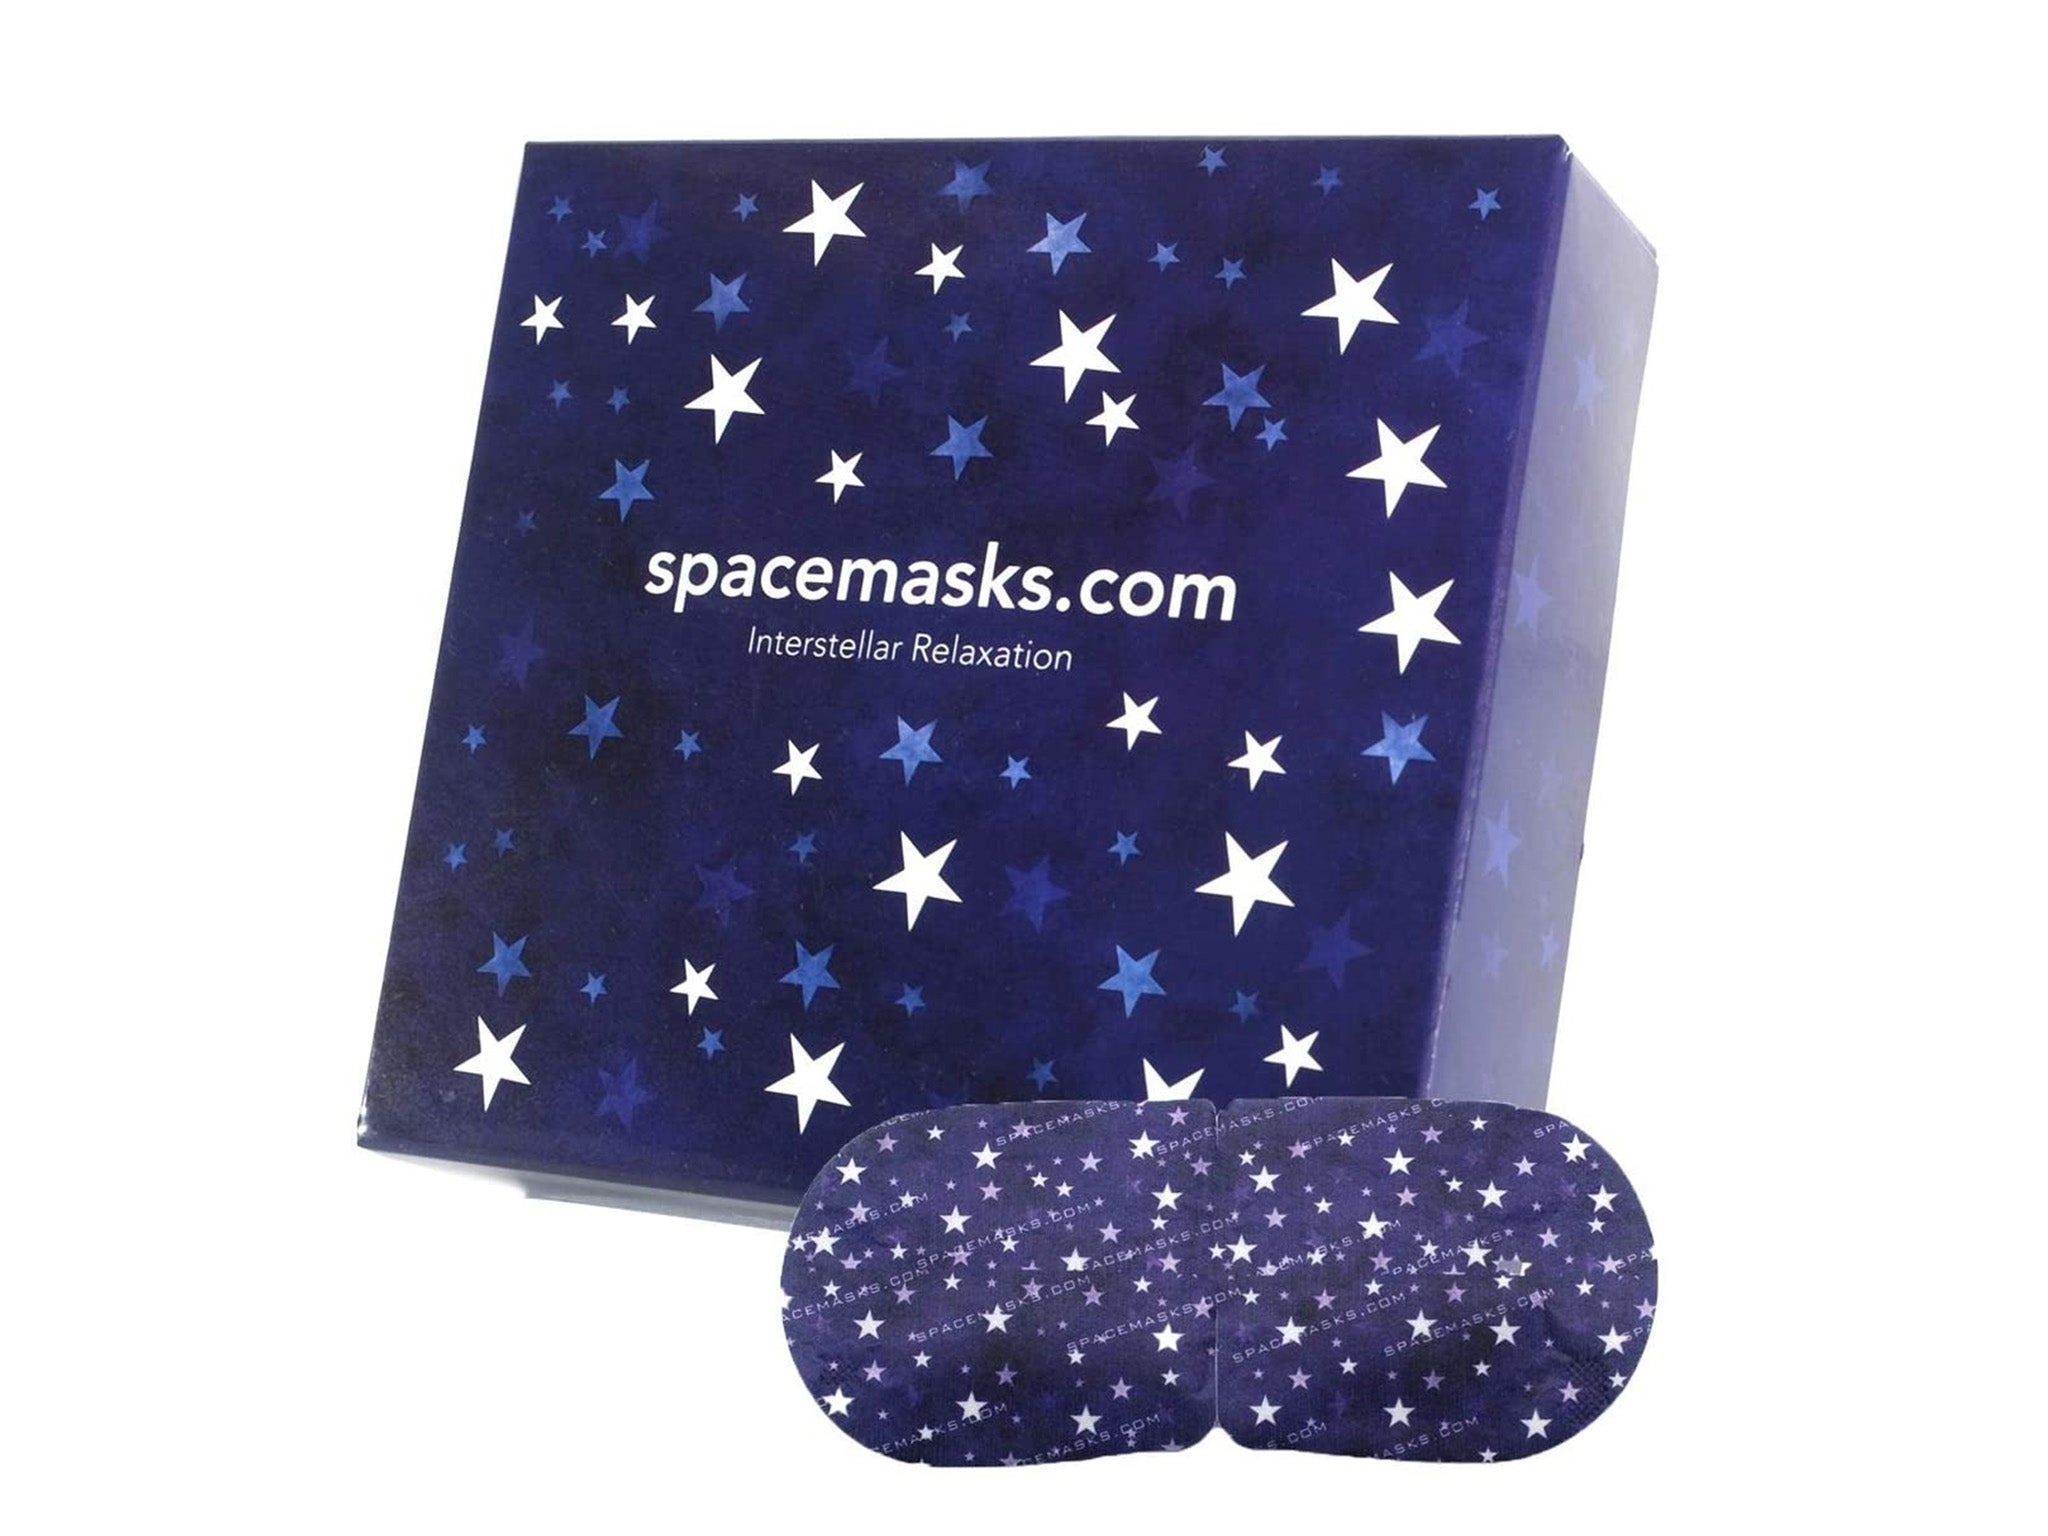 Spacemasks Self-Heating Eye Mask - 5 pack indybest.jpg